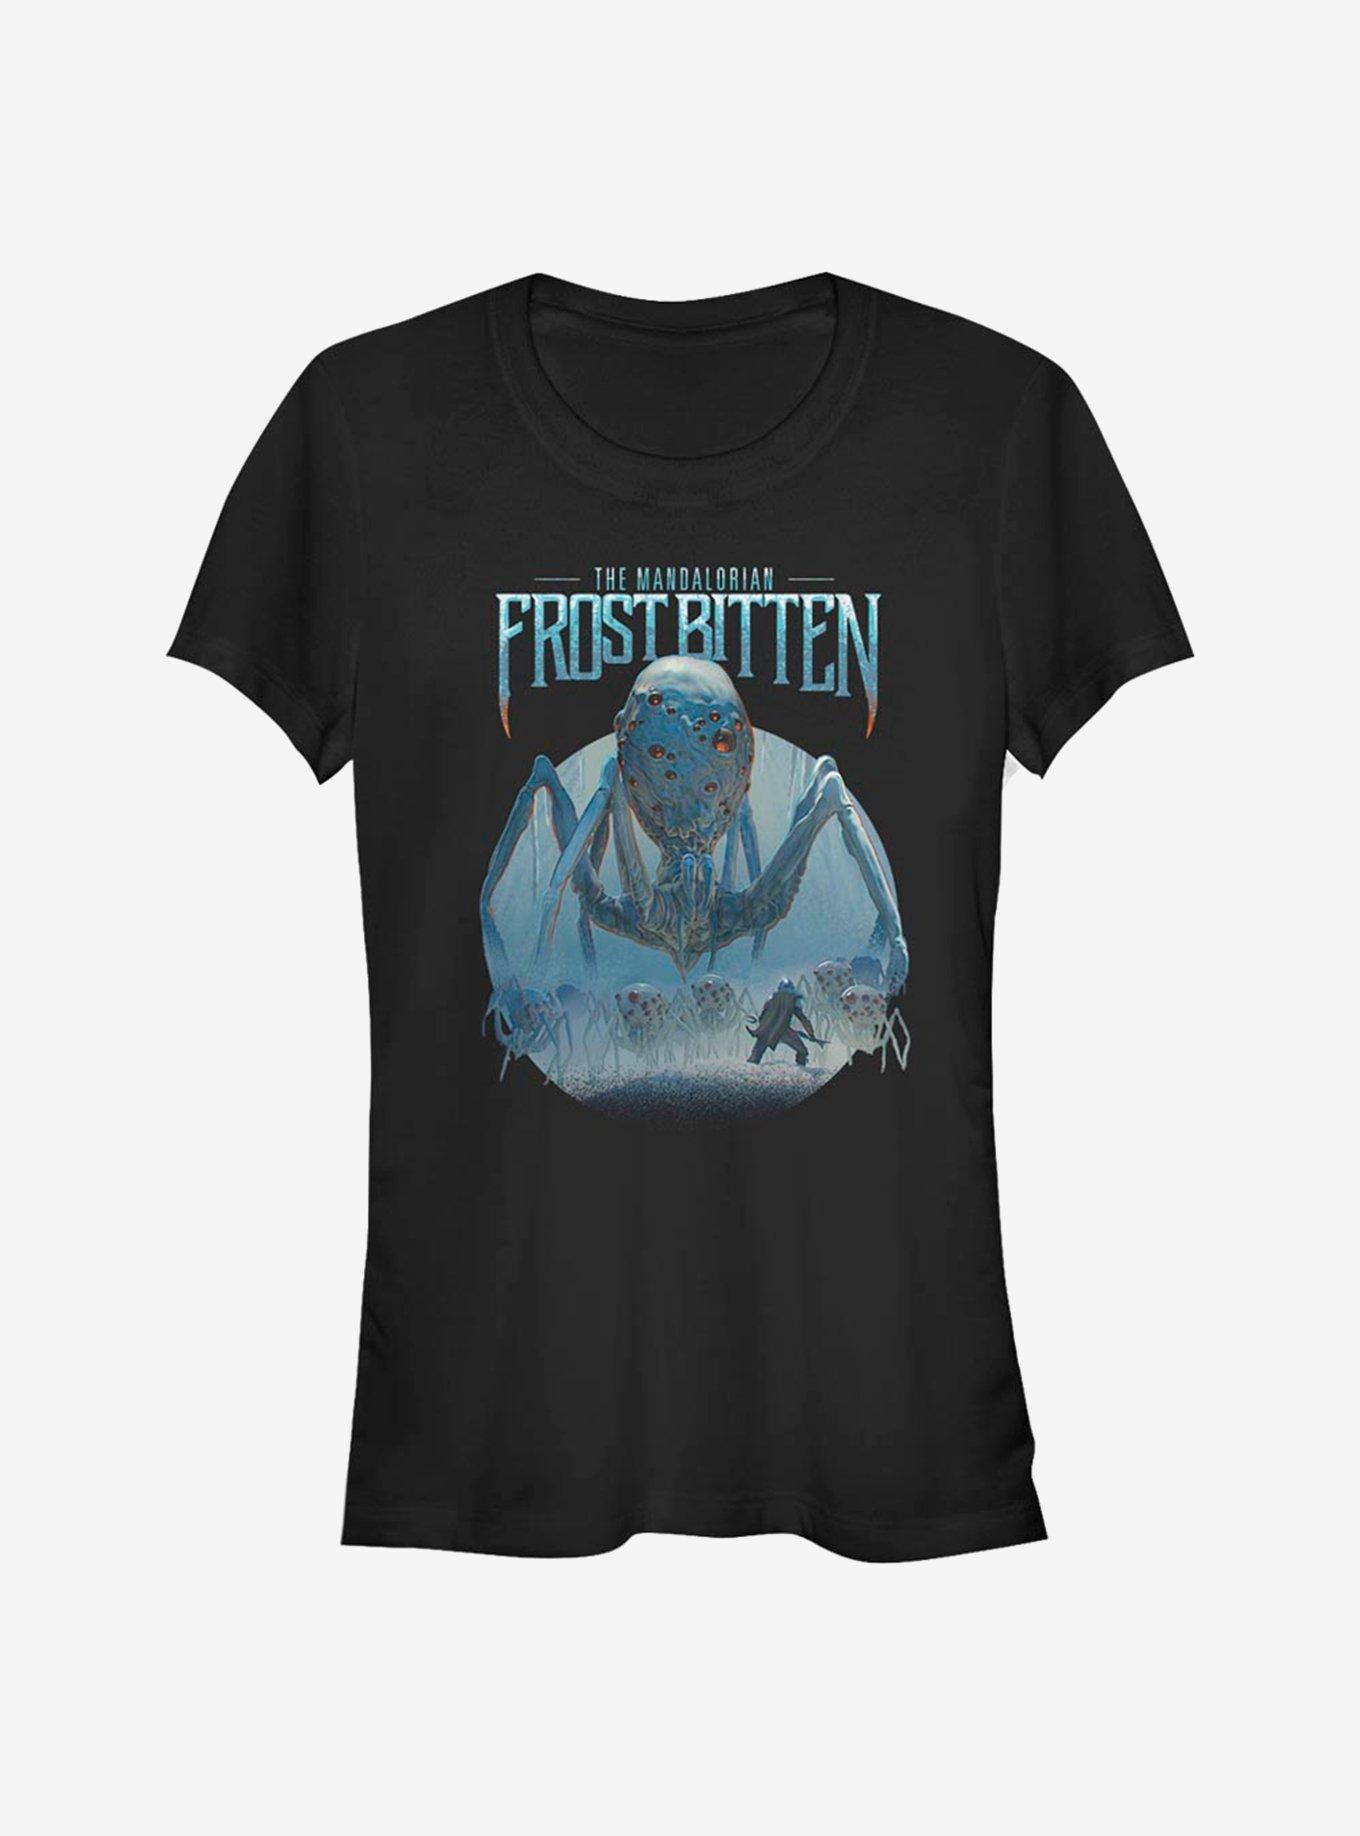 Star Wars The Mandalorian Frostbitten Girls T-Shirt